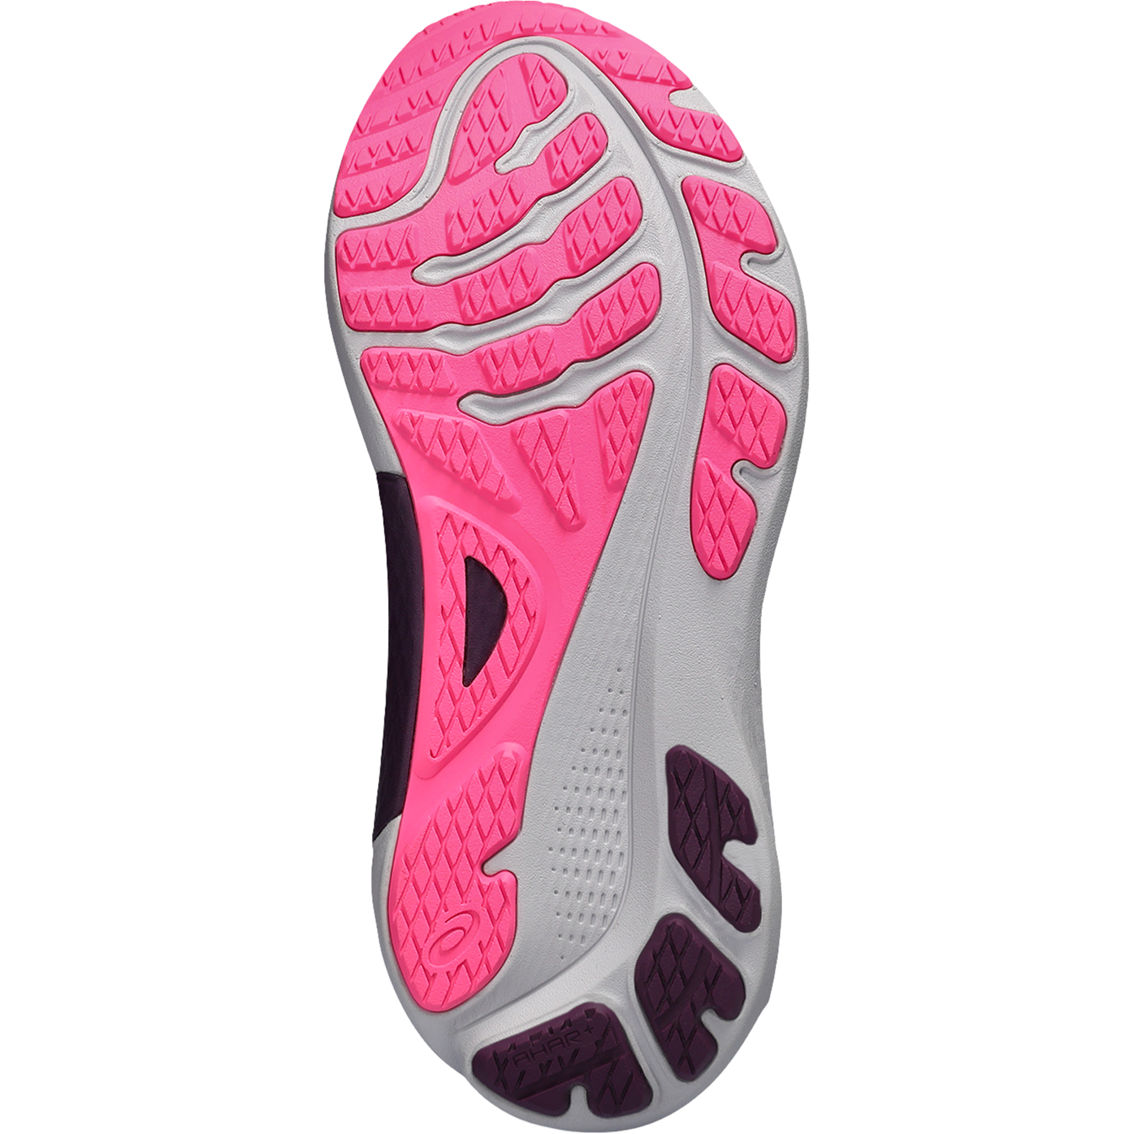 ASICS Women's Gel Kayano 30 Running Shoes - Image 5 of 6